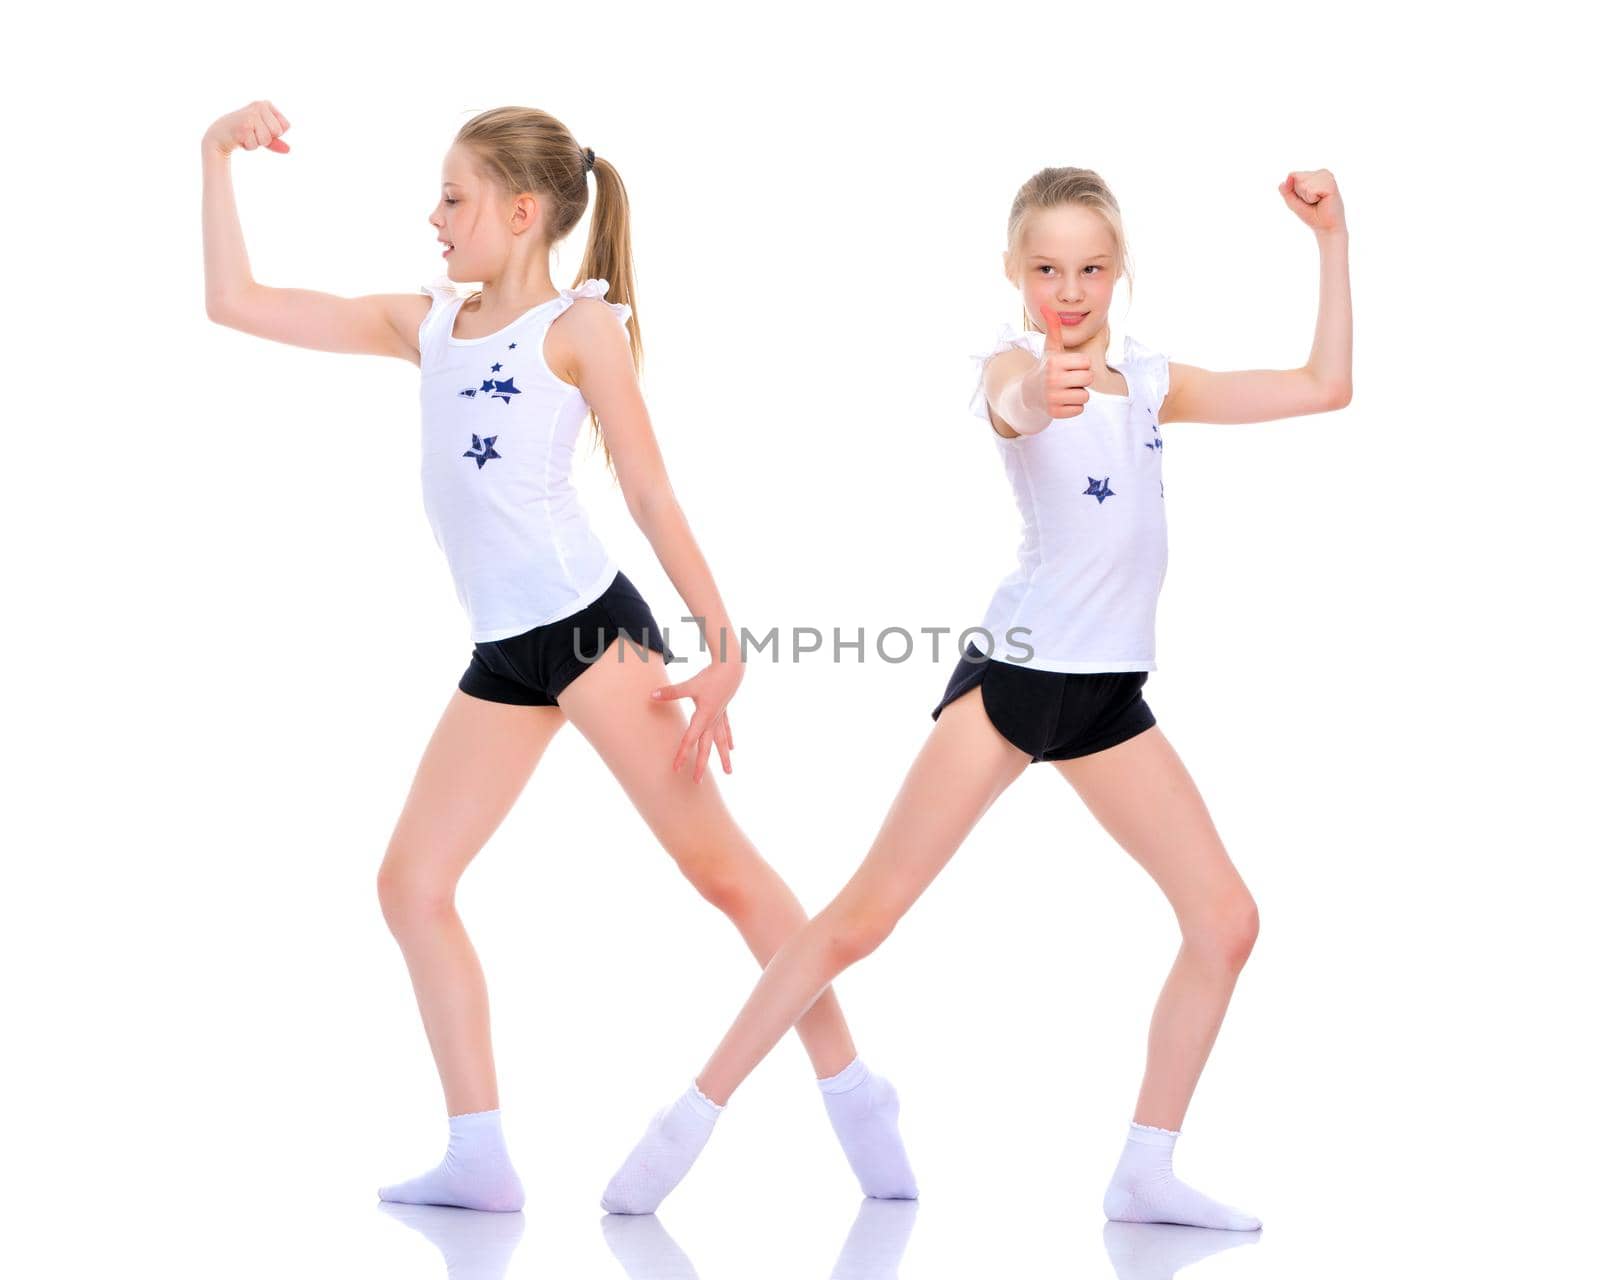 Girls gymnasts show their muscles. by kolesnikov_studio